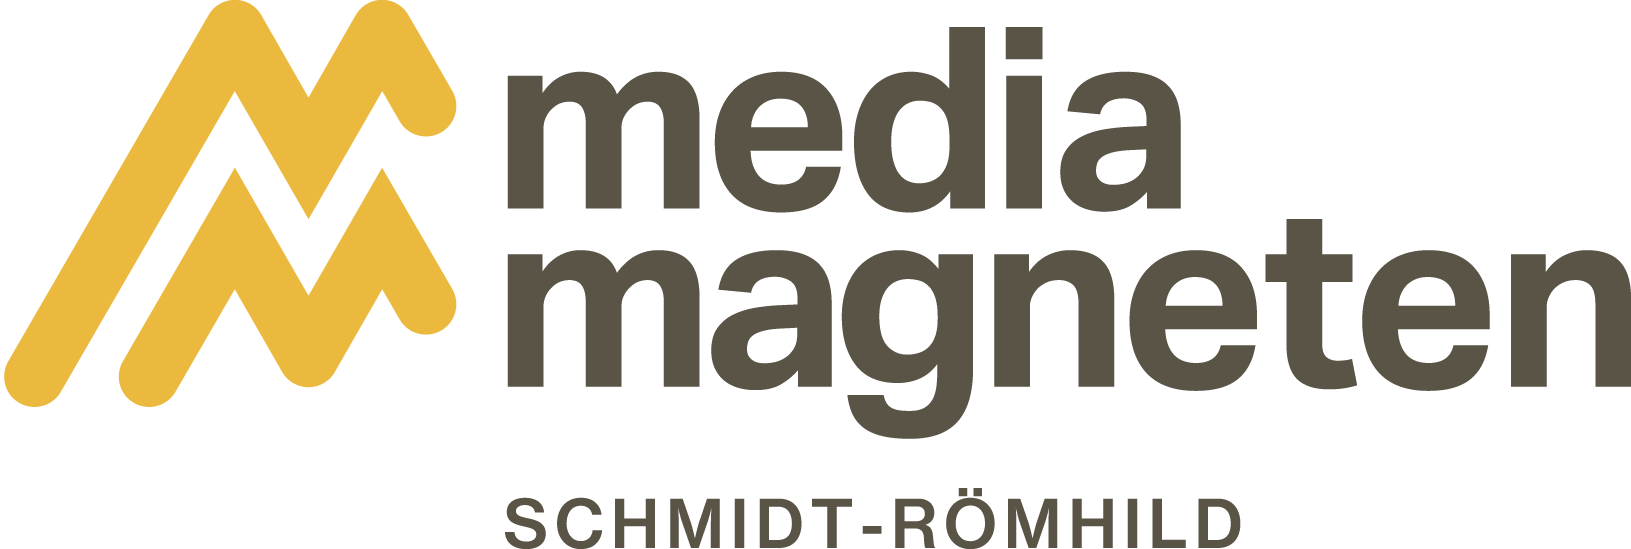 mediamagneten_schmidt-roemhild-logo